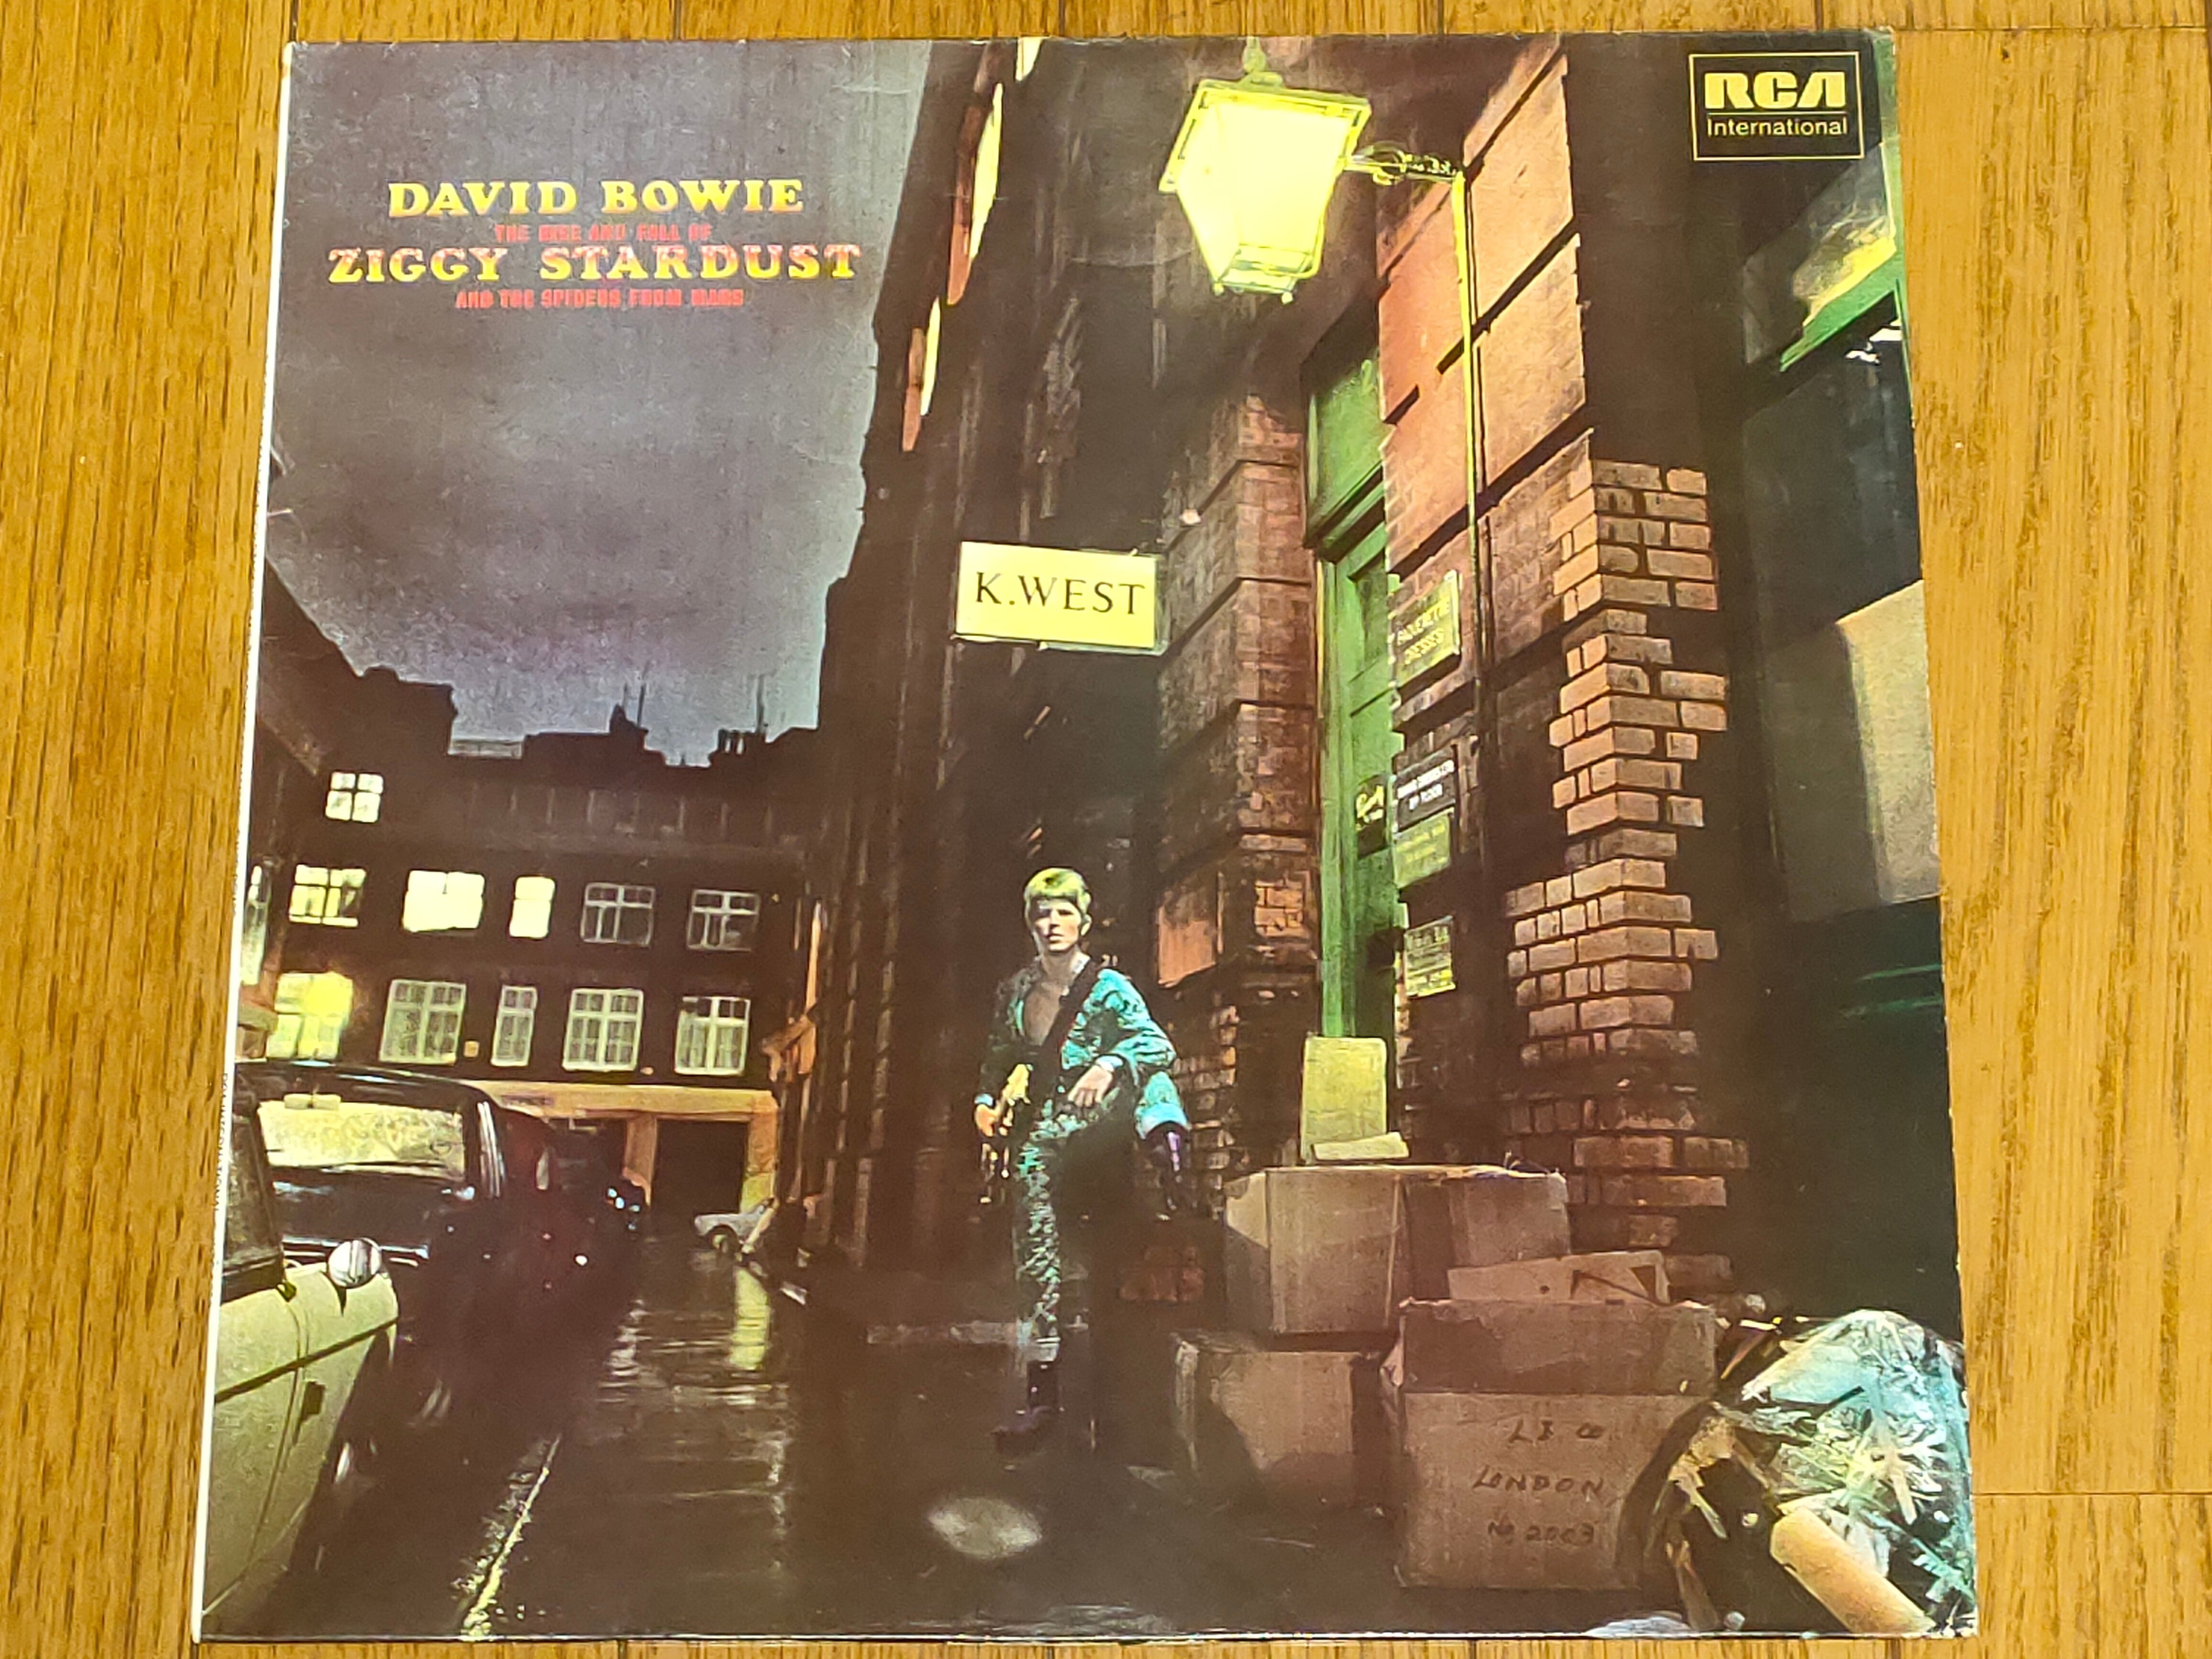 Ziggy Stardust】(1972) David Bowie 美しき異星人による華麗なロックアルバム｜よっしー